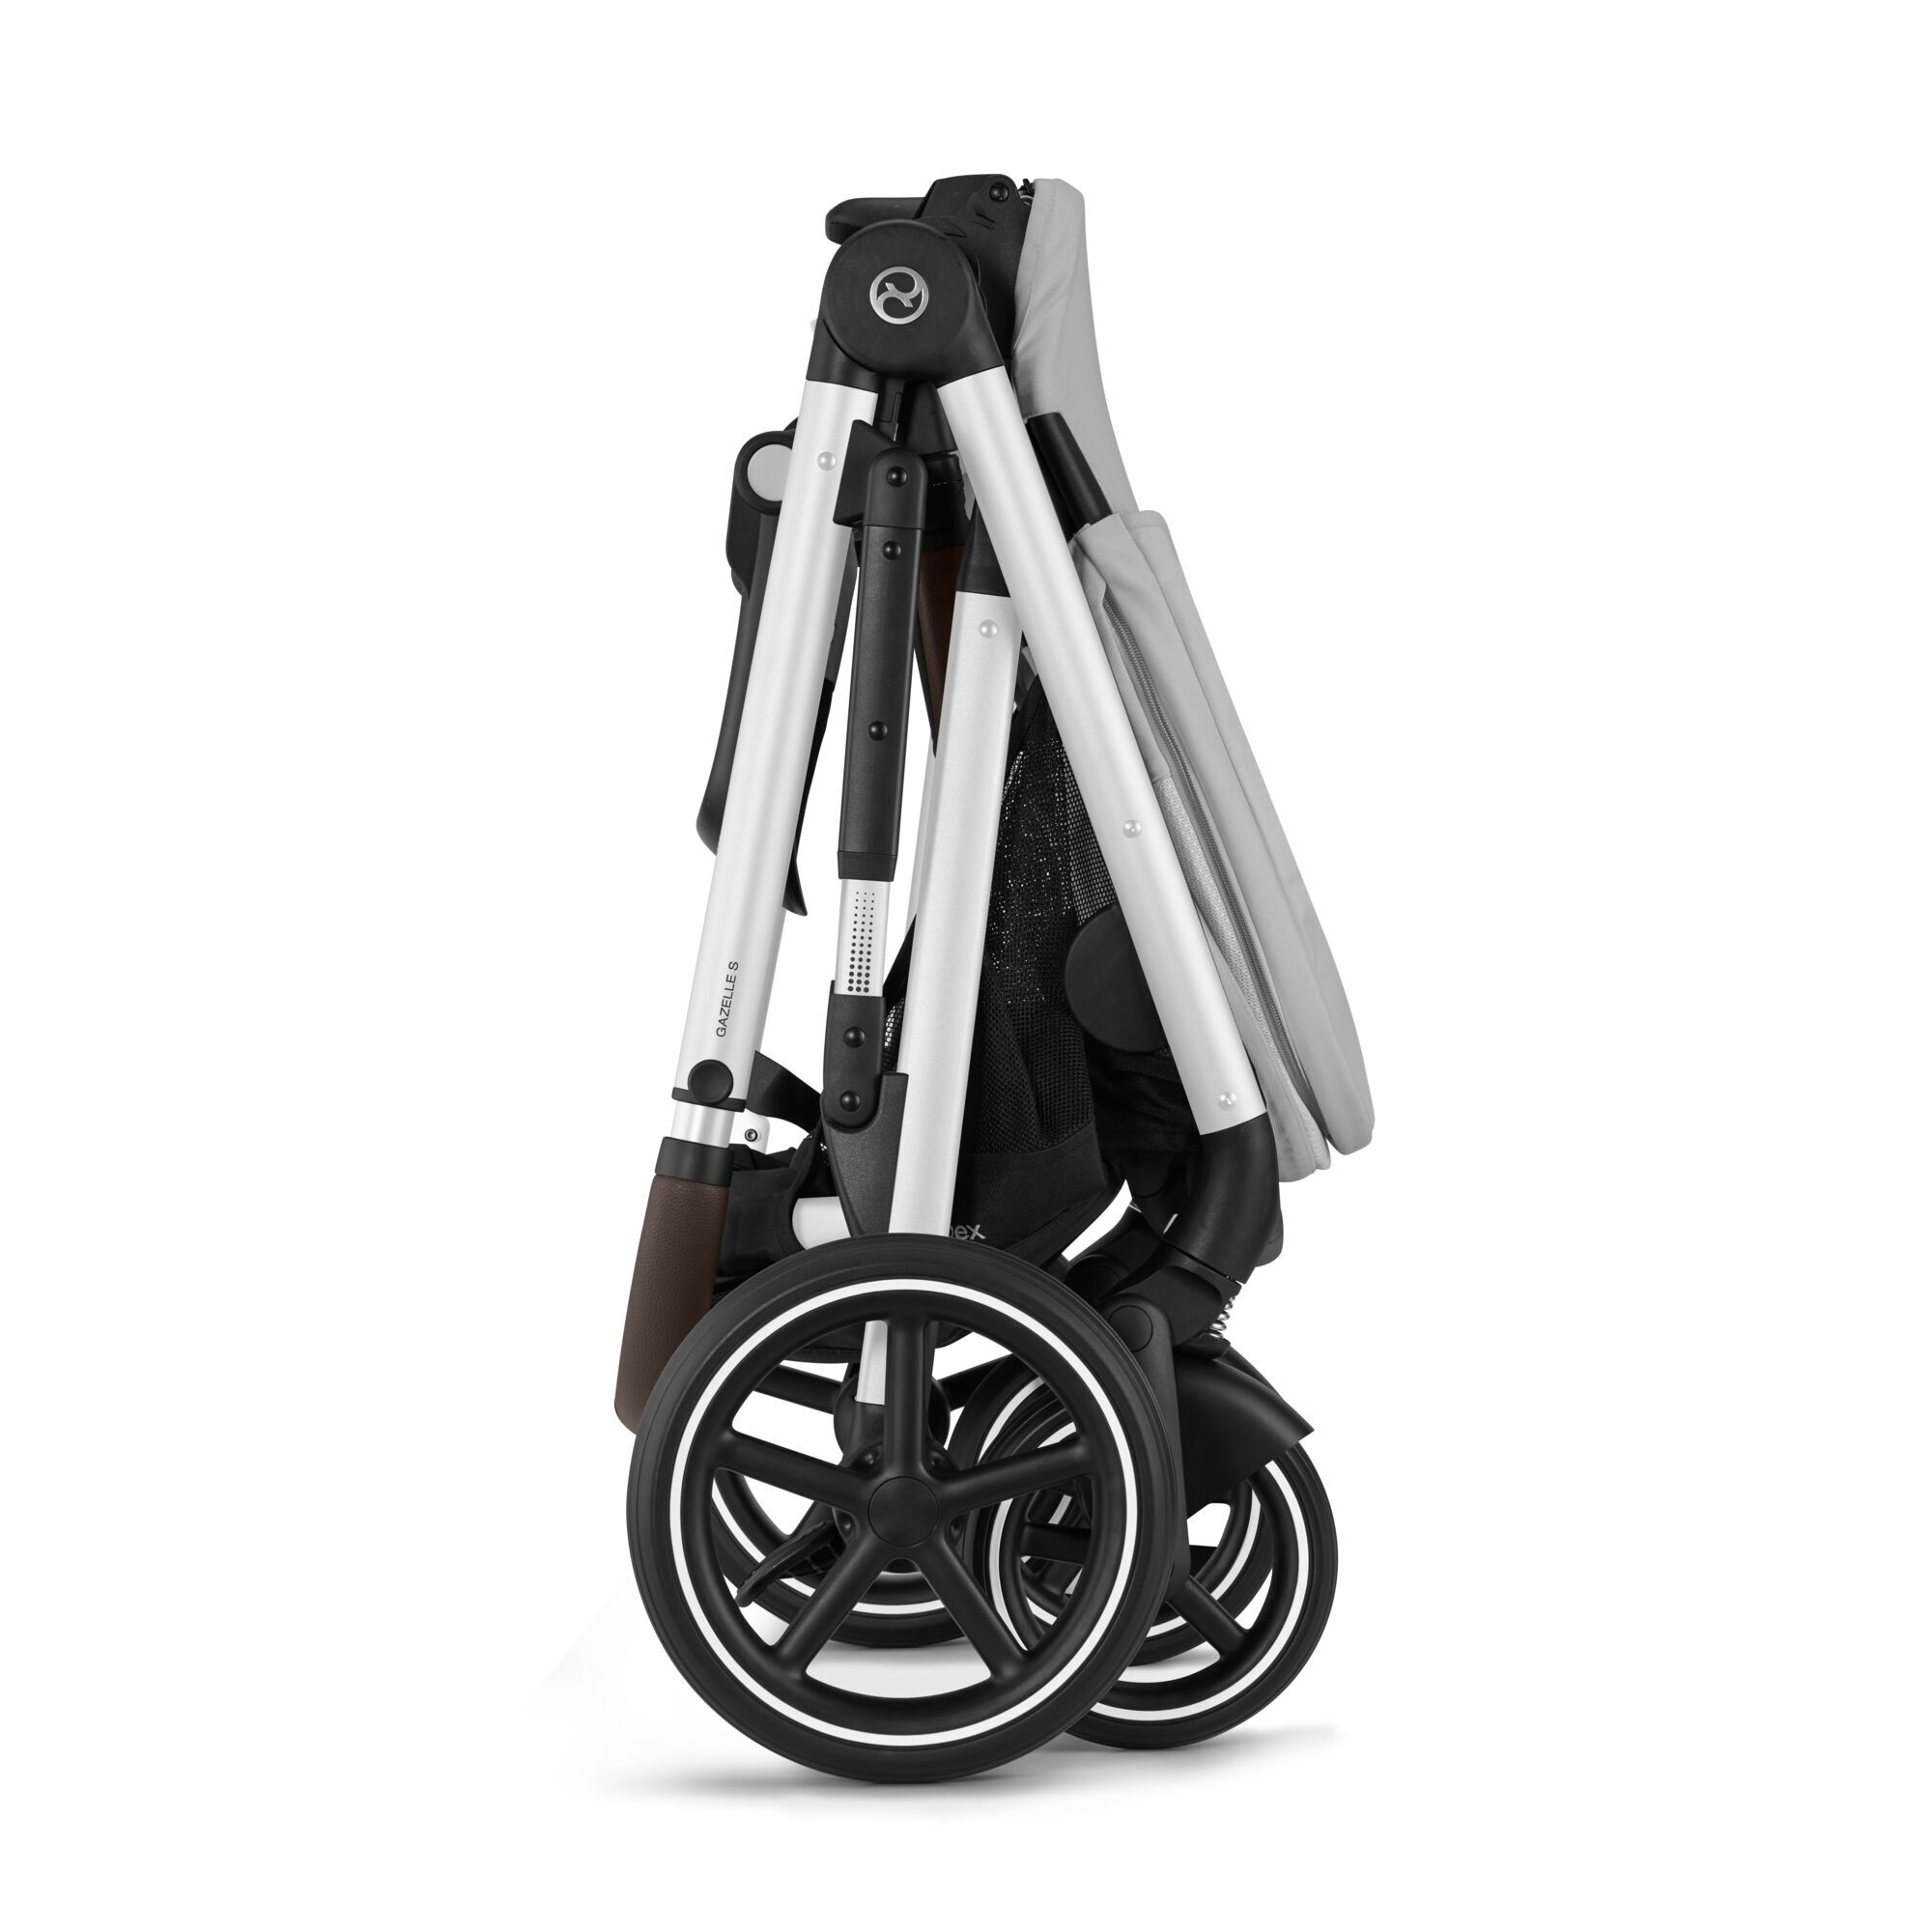 CYBEX Cybex Gazelle S All-in-One Stroller